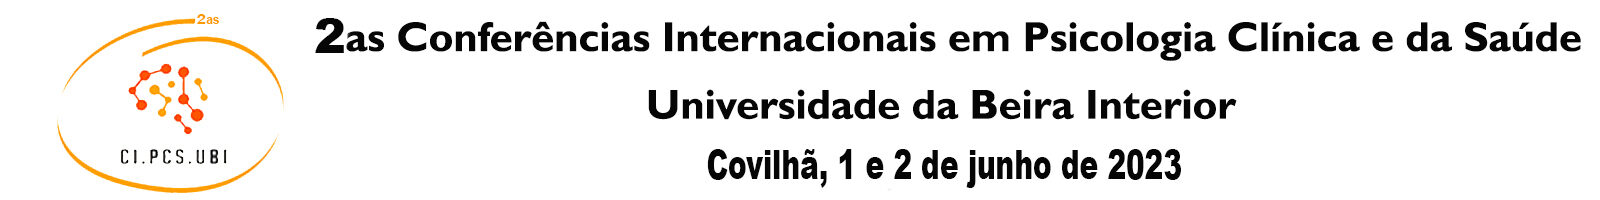 2as Conferências Internacionais em Psicologia Clínica e da Saúde da Universidade da Beira Interior